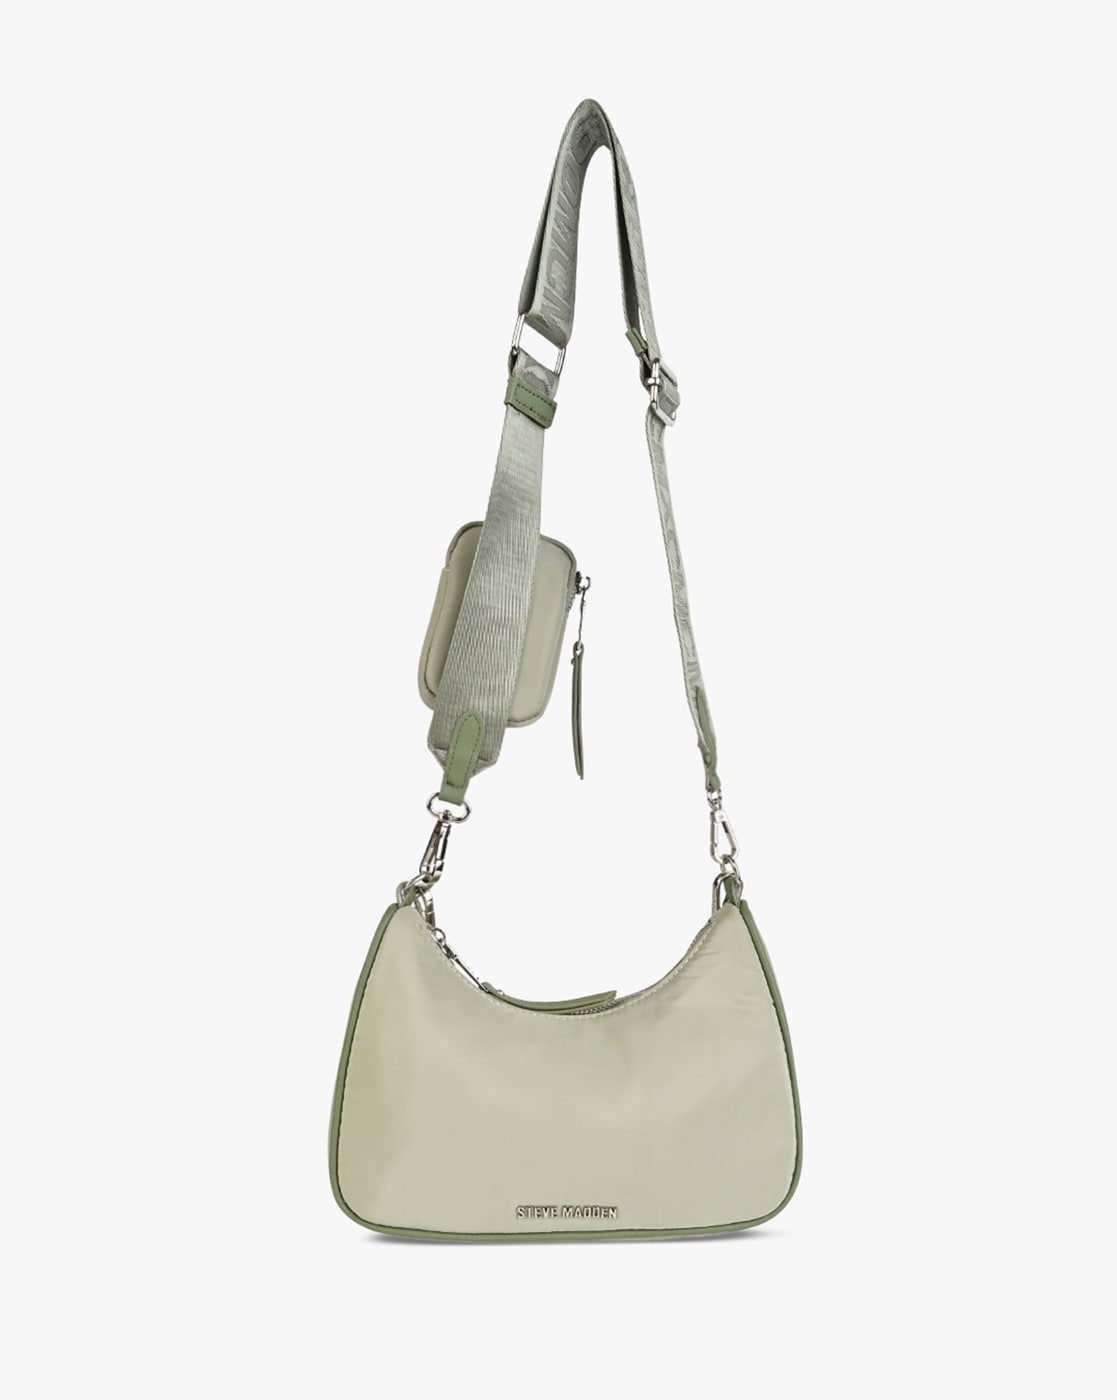 All Women's Handbags  Crossbody & Shoulder Bags, Clutches & Belt Bags –  Steve Madden